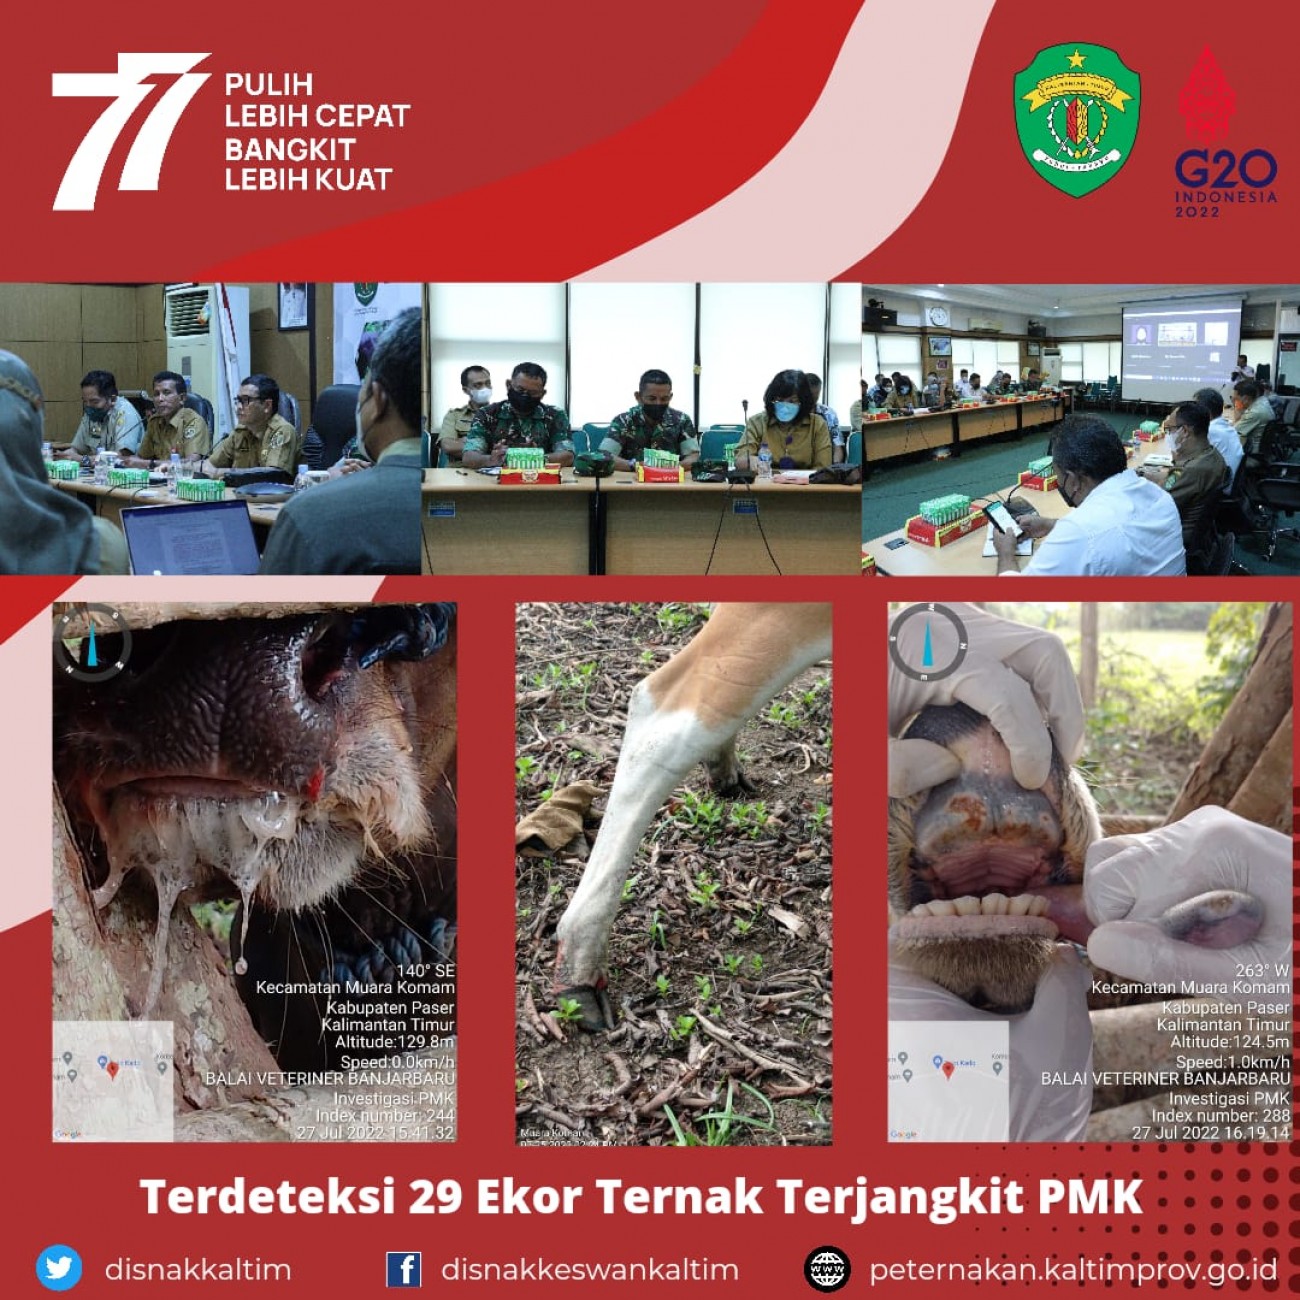 Terdeteksi 29 Ekor Ternak Terjangkit PMK di Kabupaten Paser